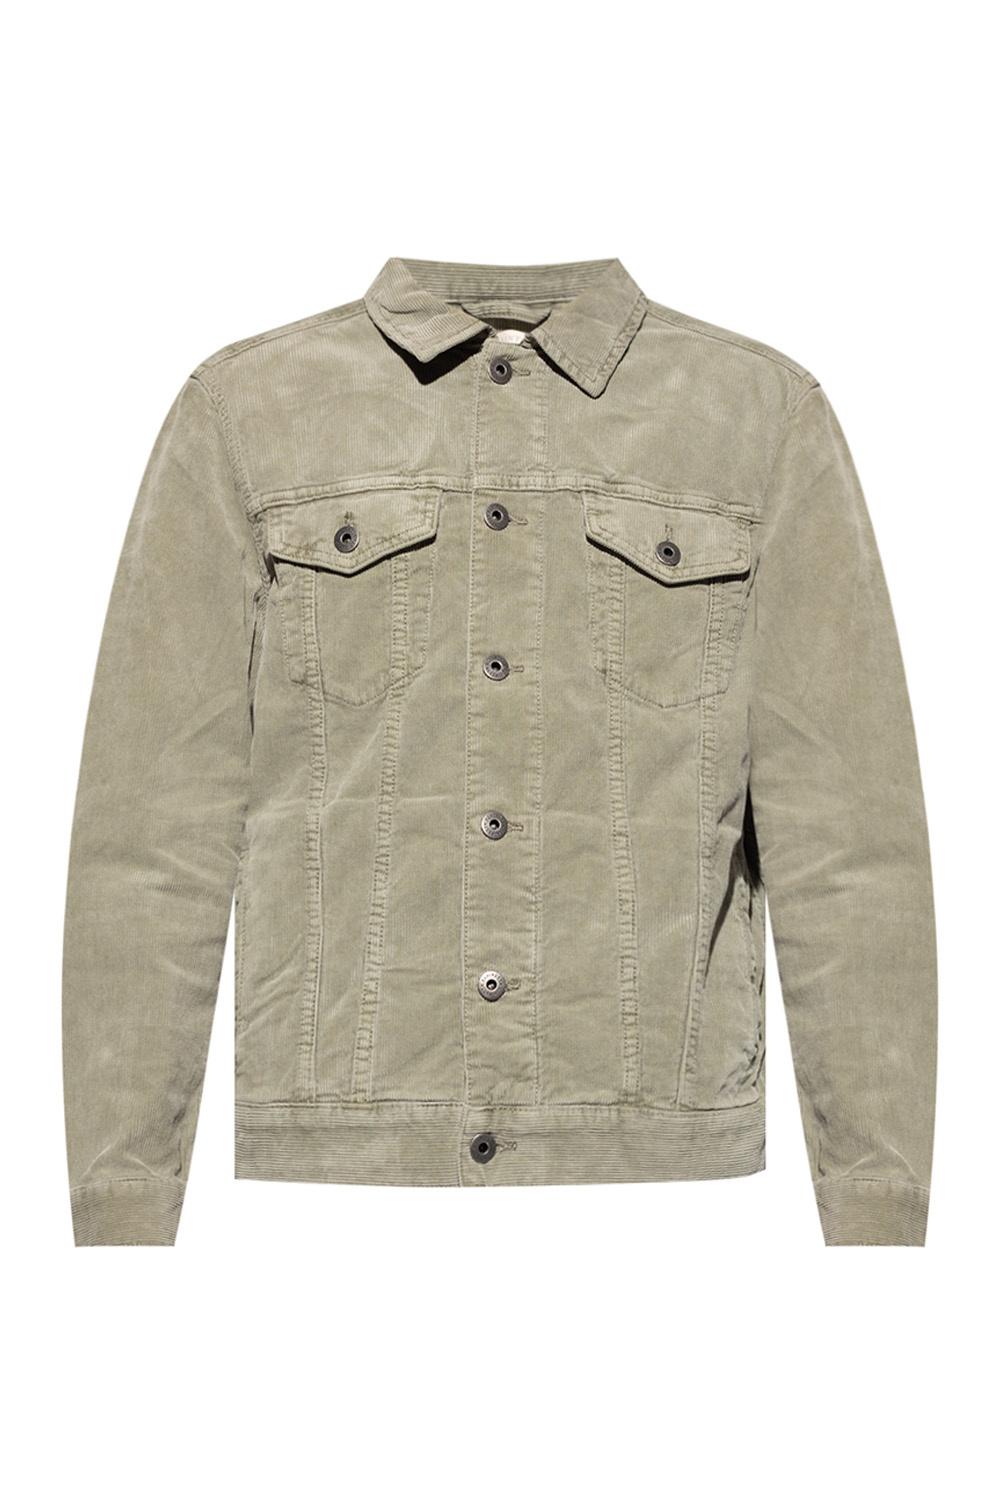 IetpShops Morocco - \'Marton\' Sweatshirt corduroy Tailor Tom down jacket AllSaints mit Rundhalsausschnitt Silbergrau in 